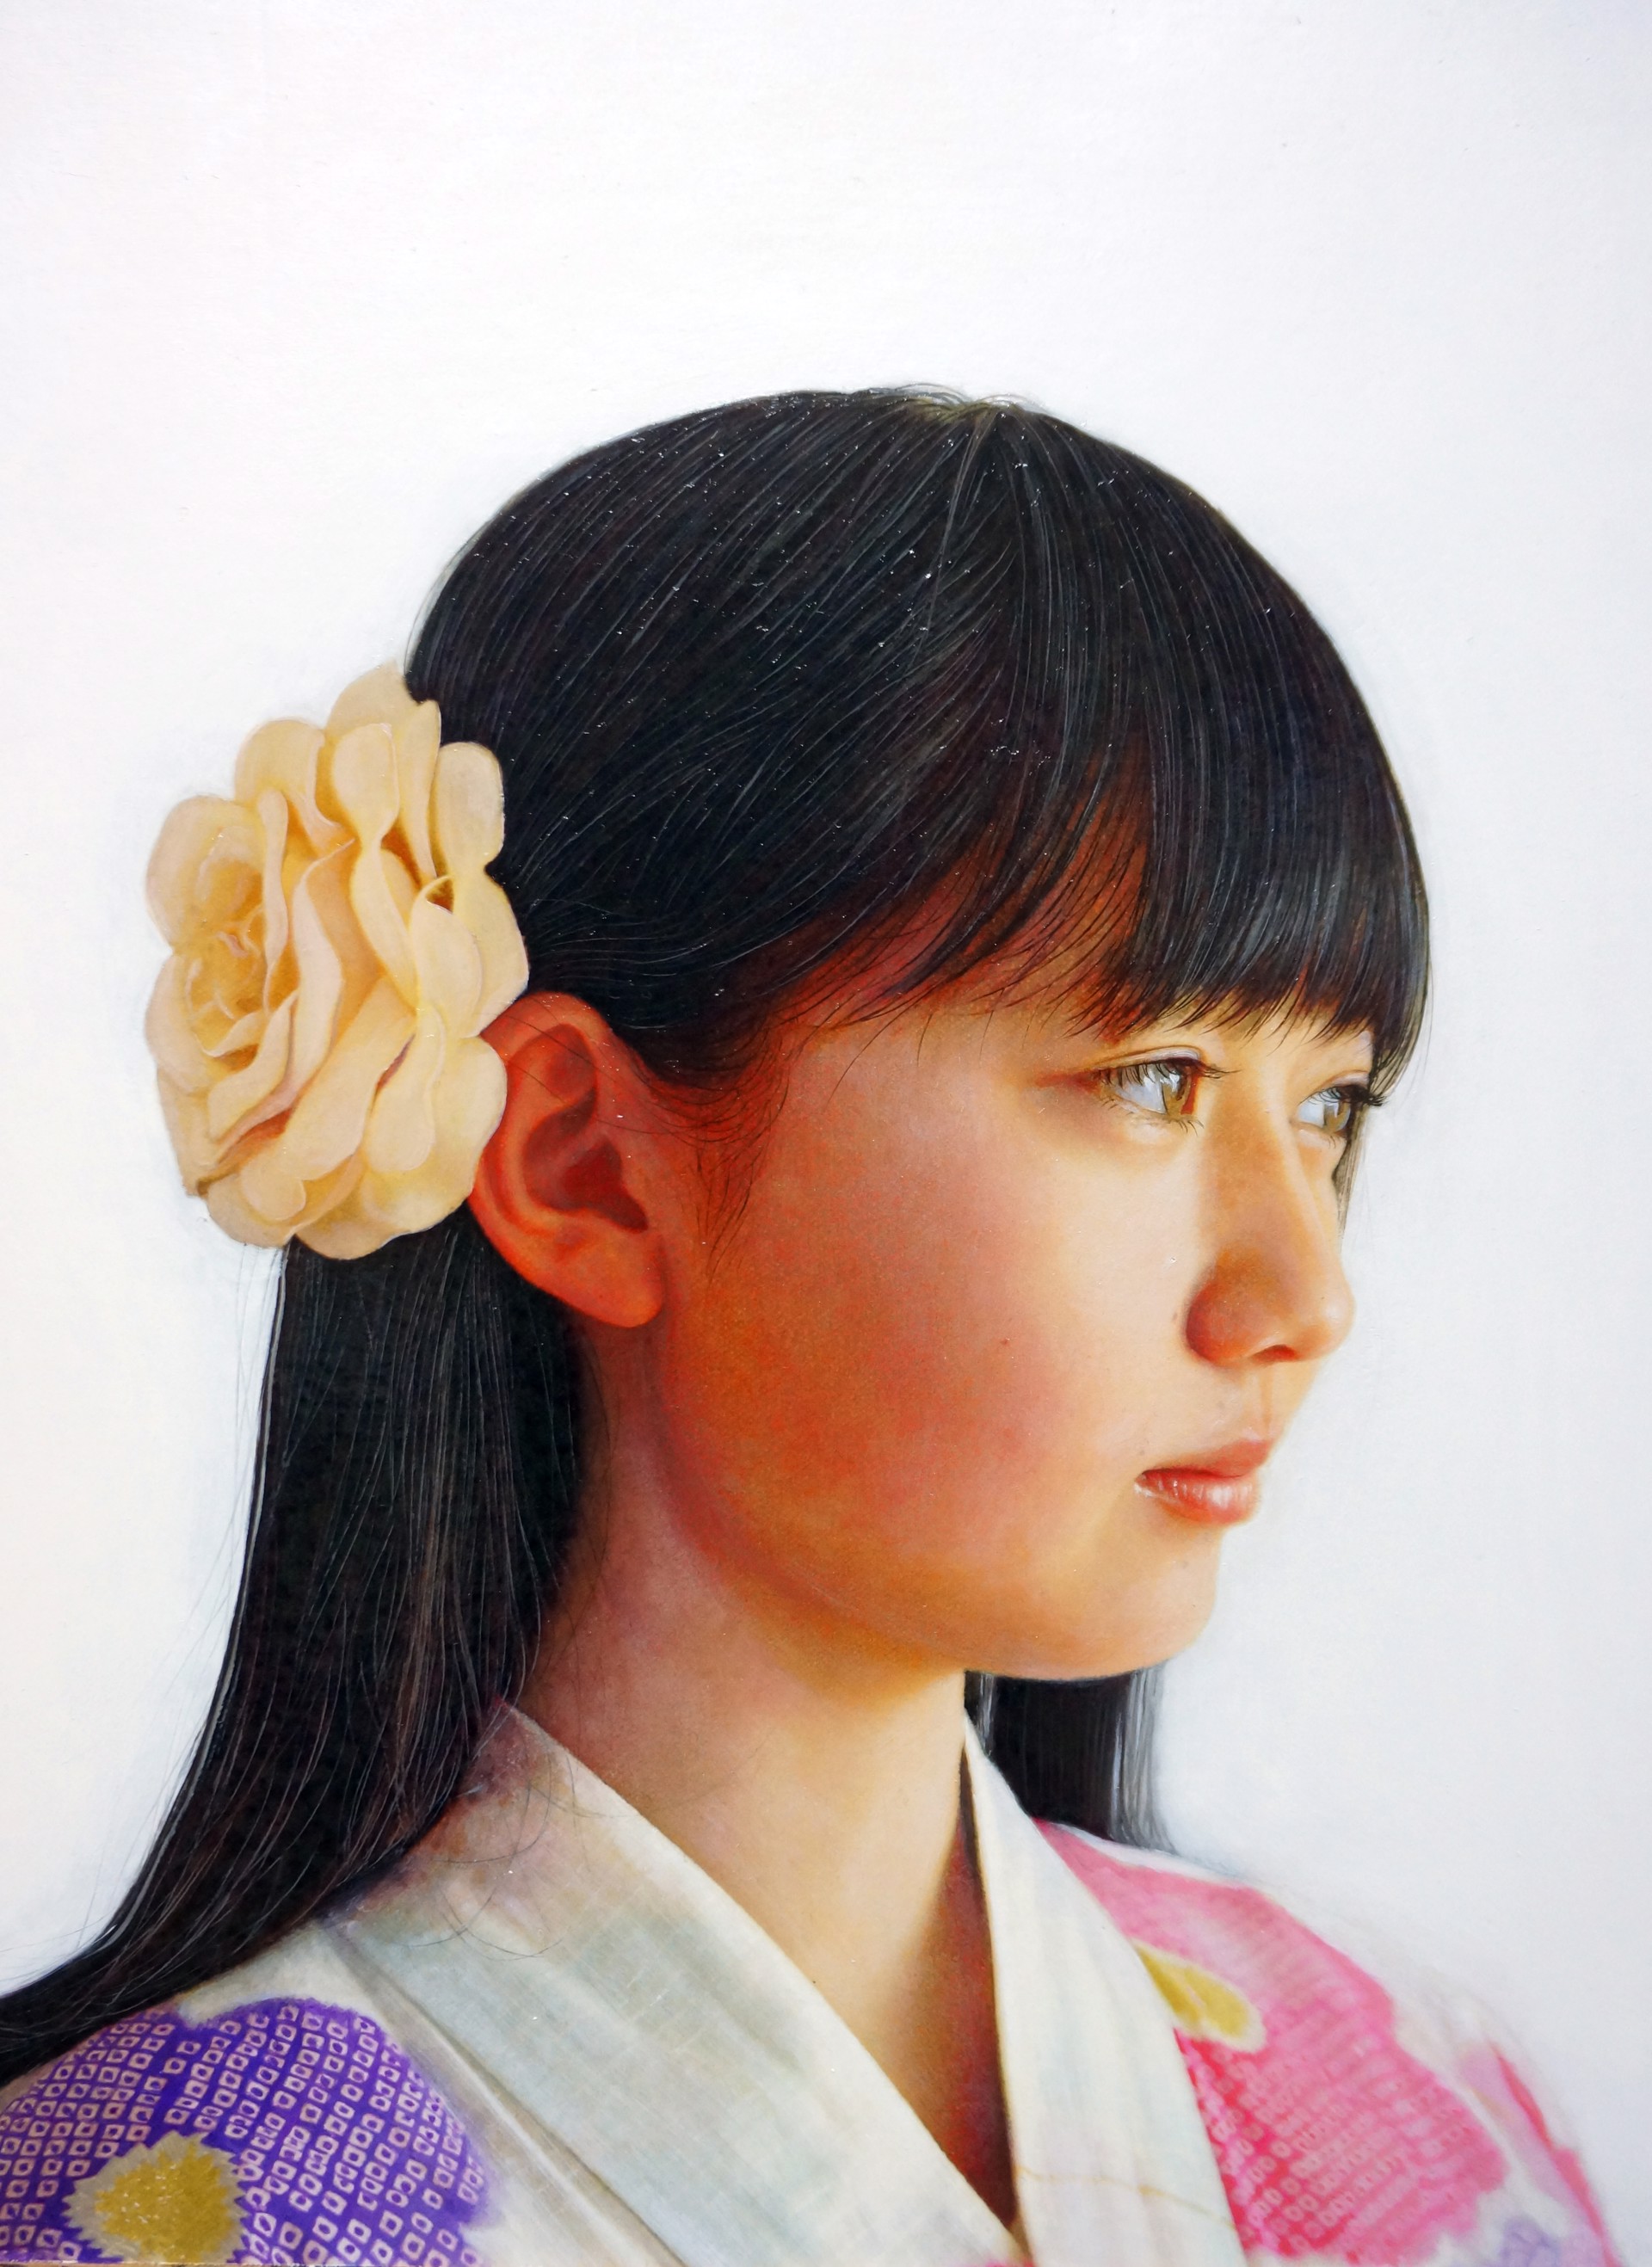 Koharu by Kazuya Ushioda